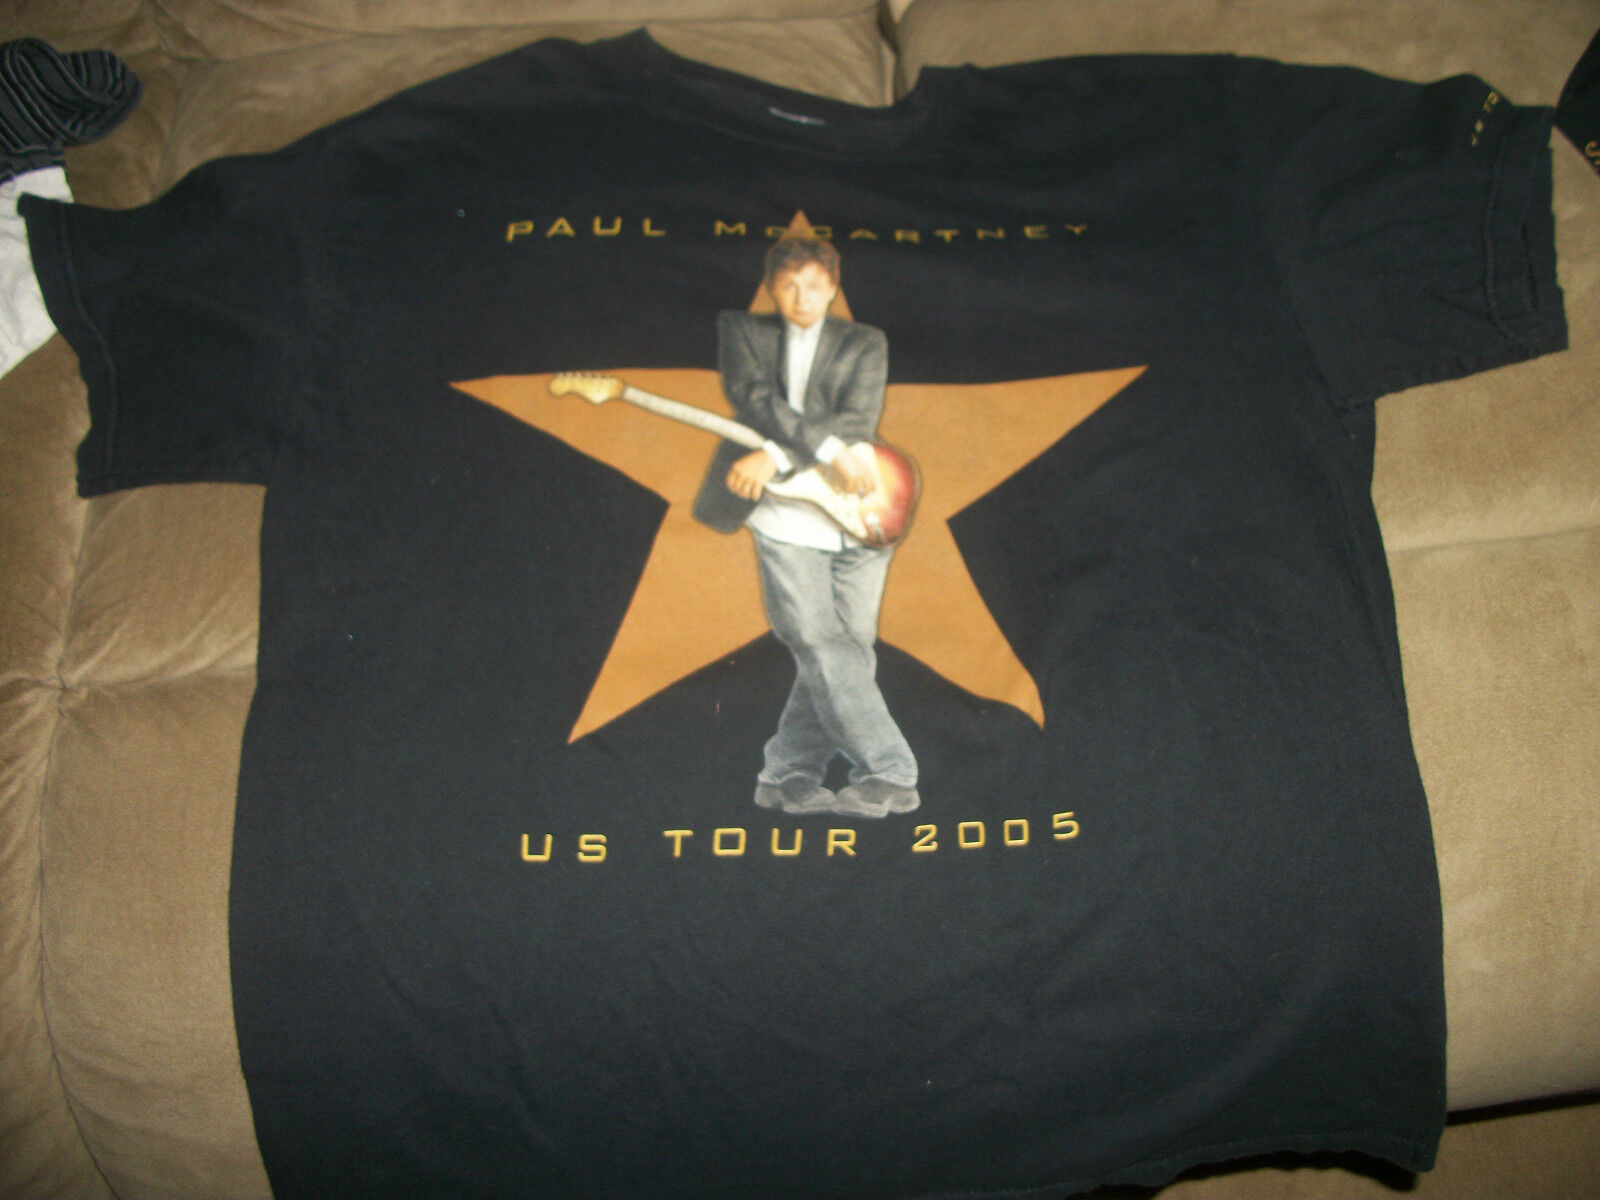 FANTASTIC Paul McCartney 35% OFF famous CONCERT Tour GENTLE SMALL T-Shirt 2005